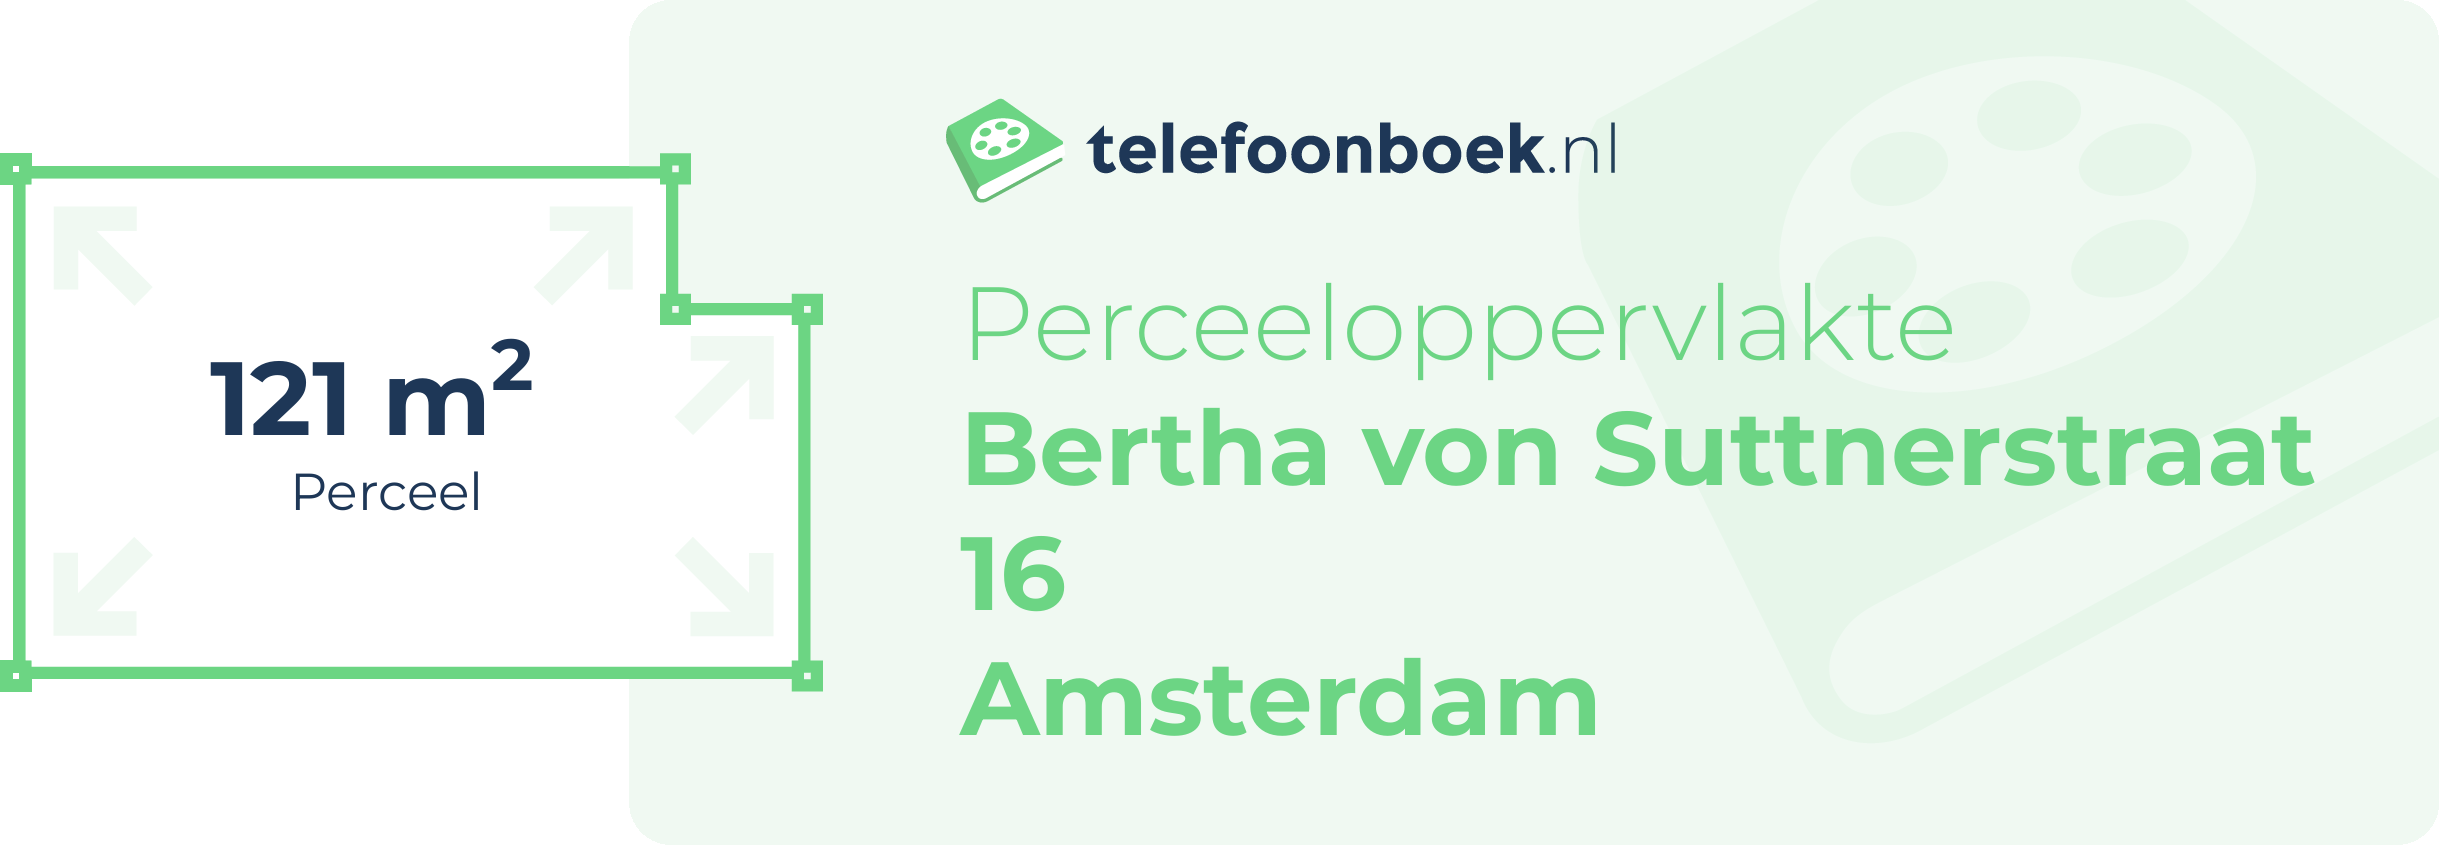 Perceeloppervlakte Bertha Von Suttnerstraat 16 Amsterdam